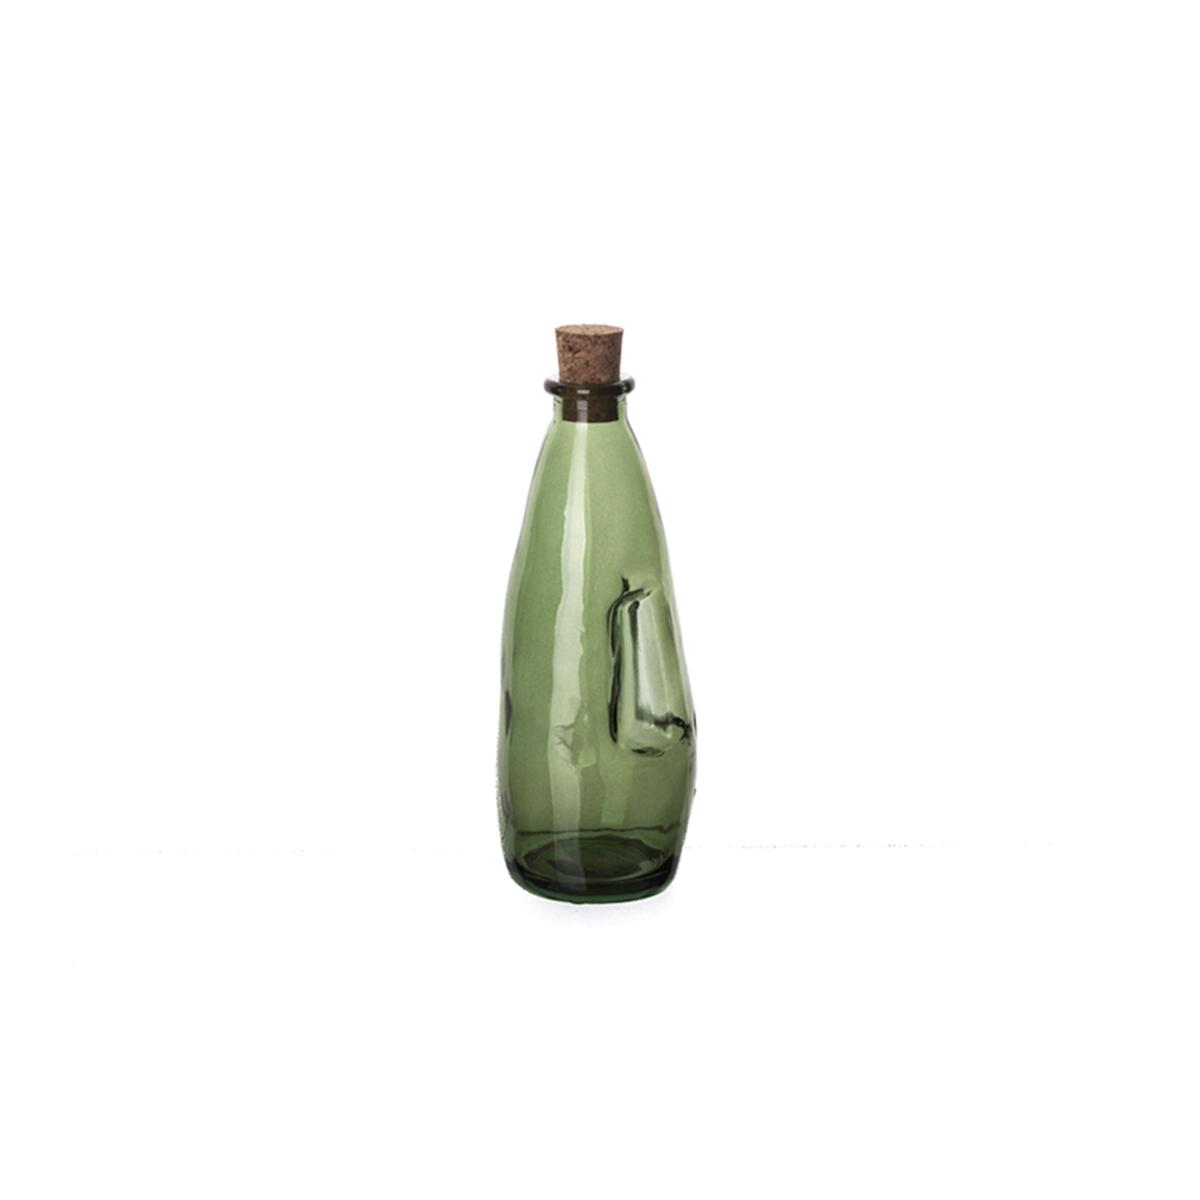 Sanmiguel Green Oil Bottle 300 cc